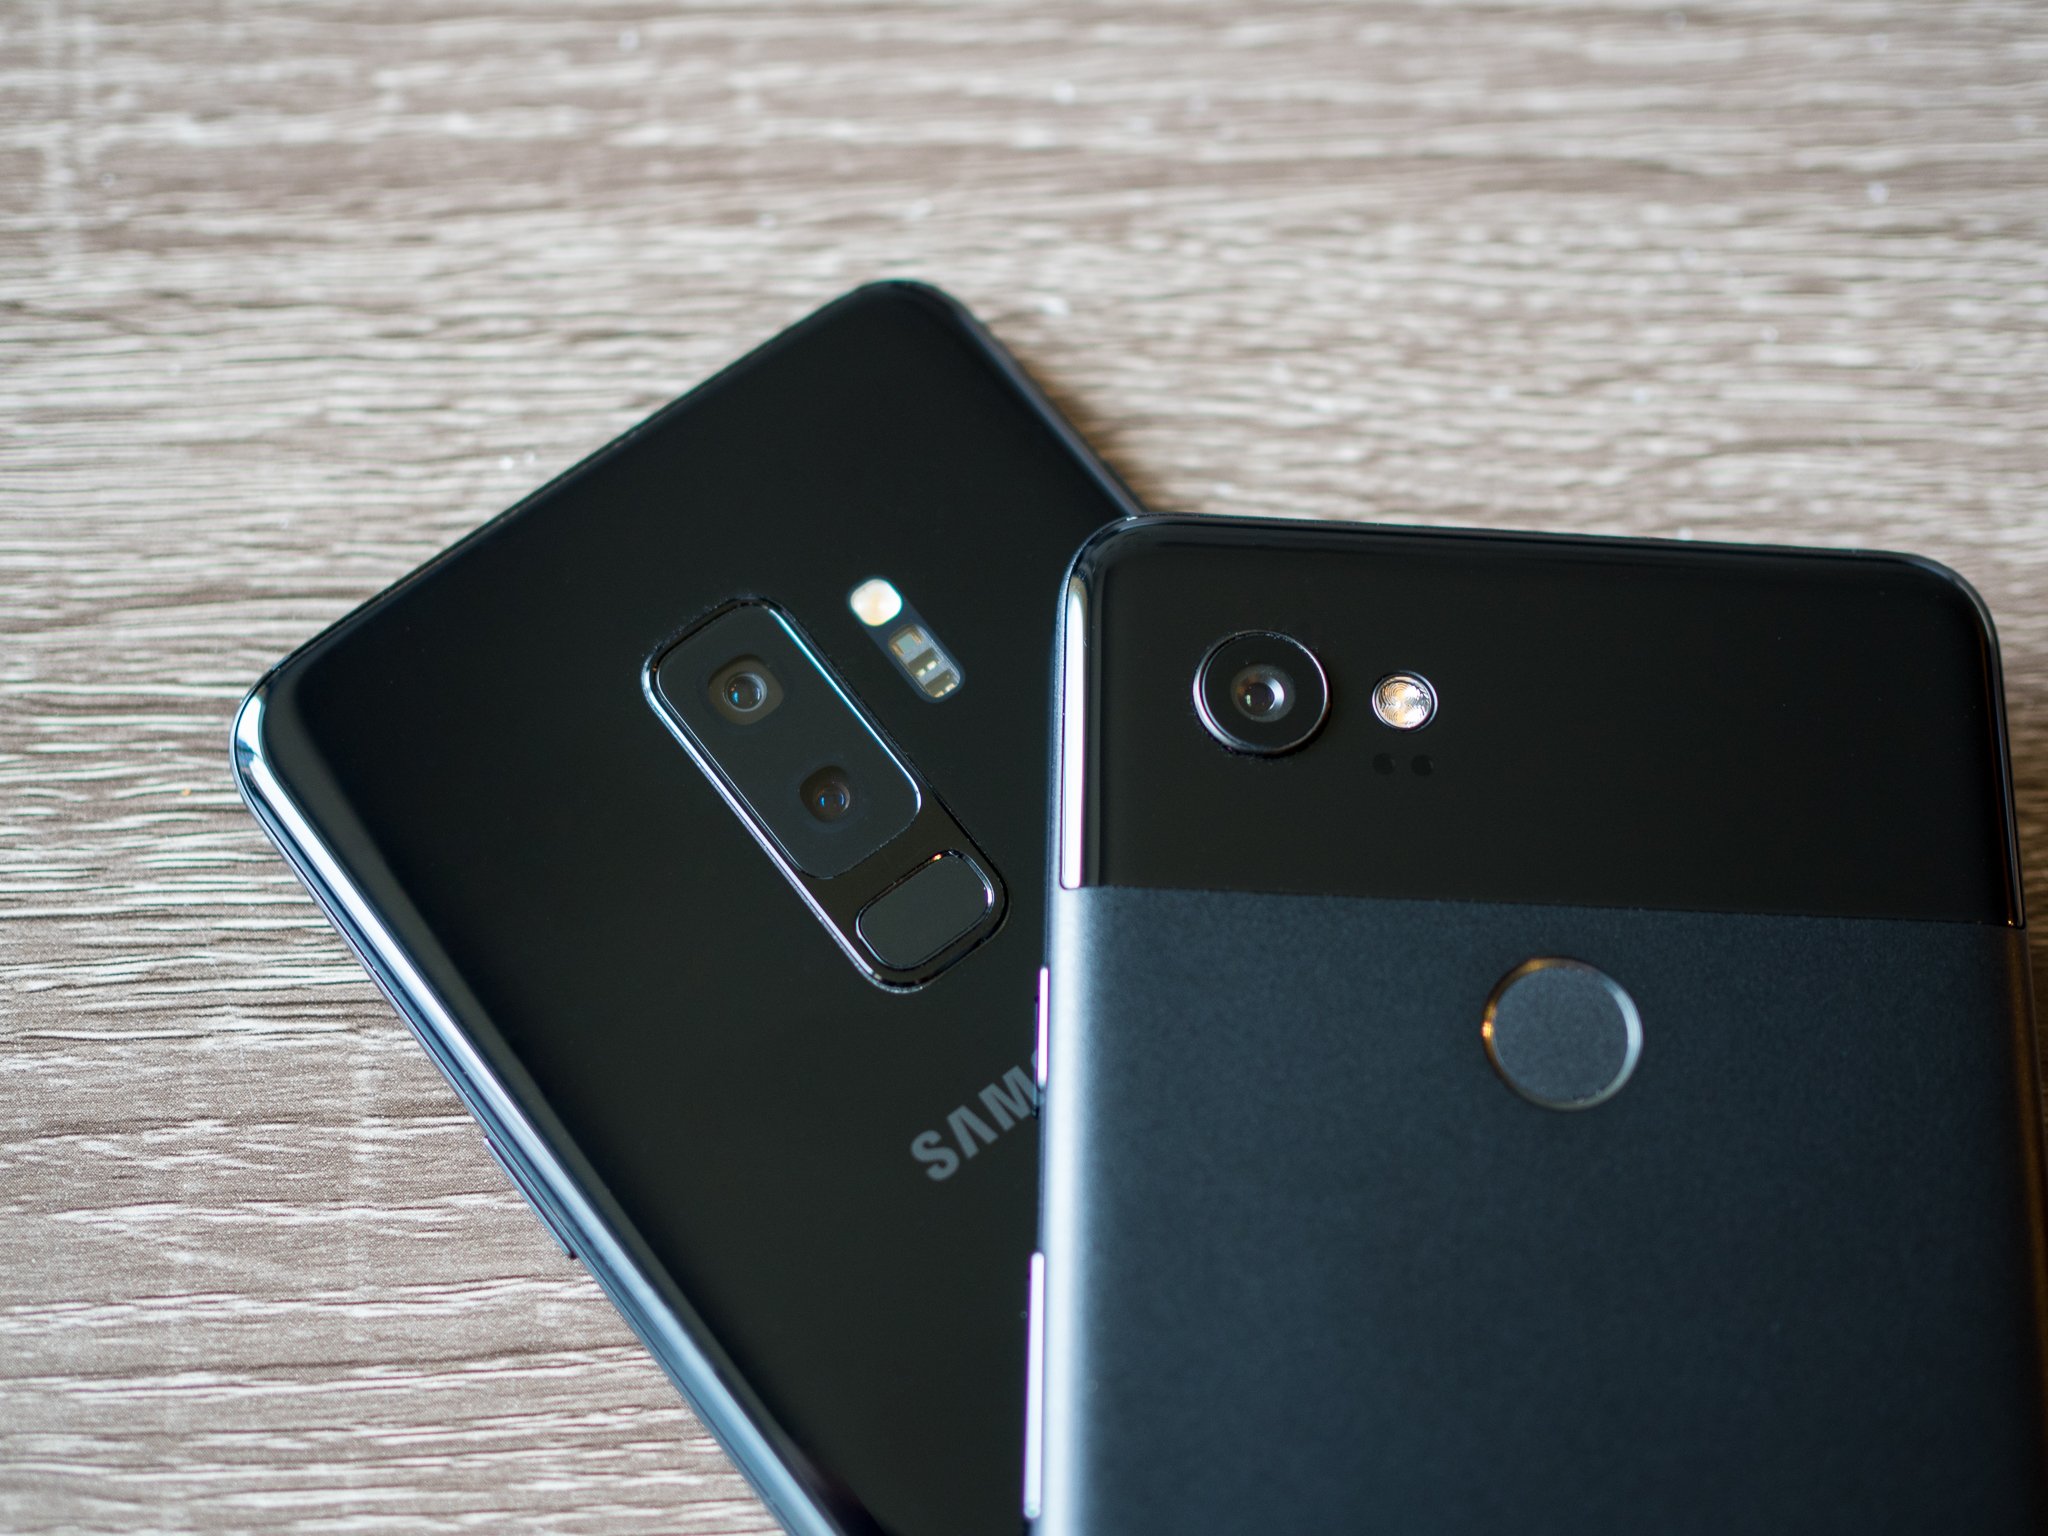 Galaxy S9 Plus vs Pixel 2 Camera Comparison: The Ultimate Smartphone Camera?